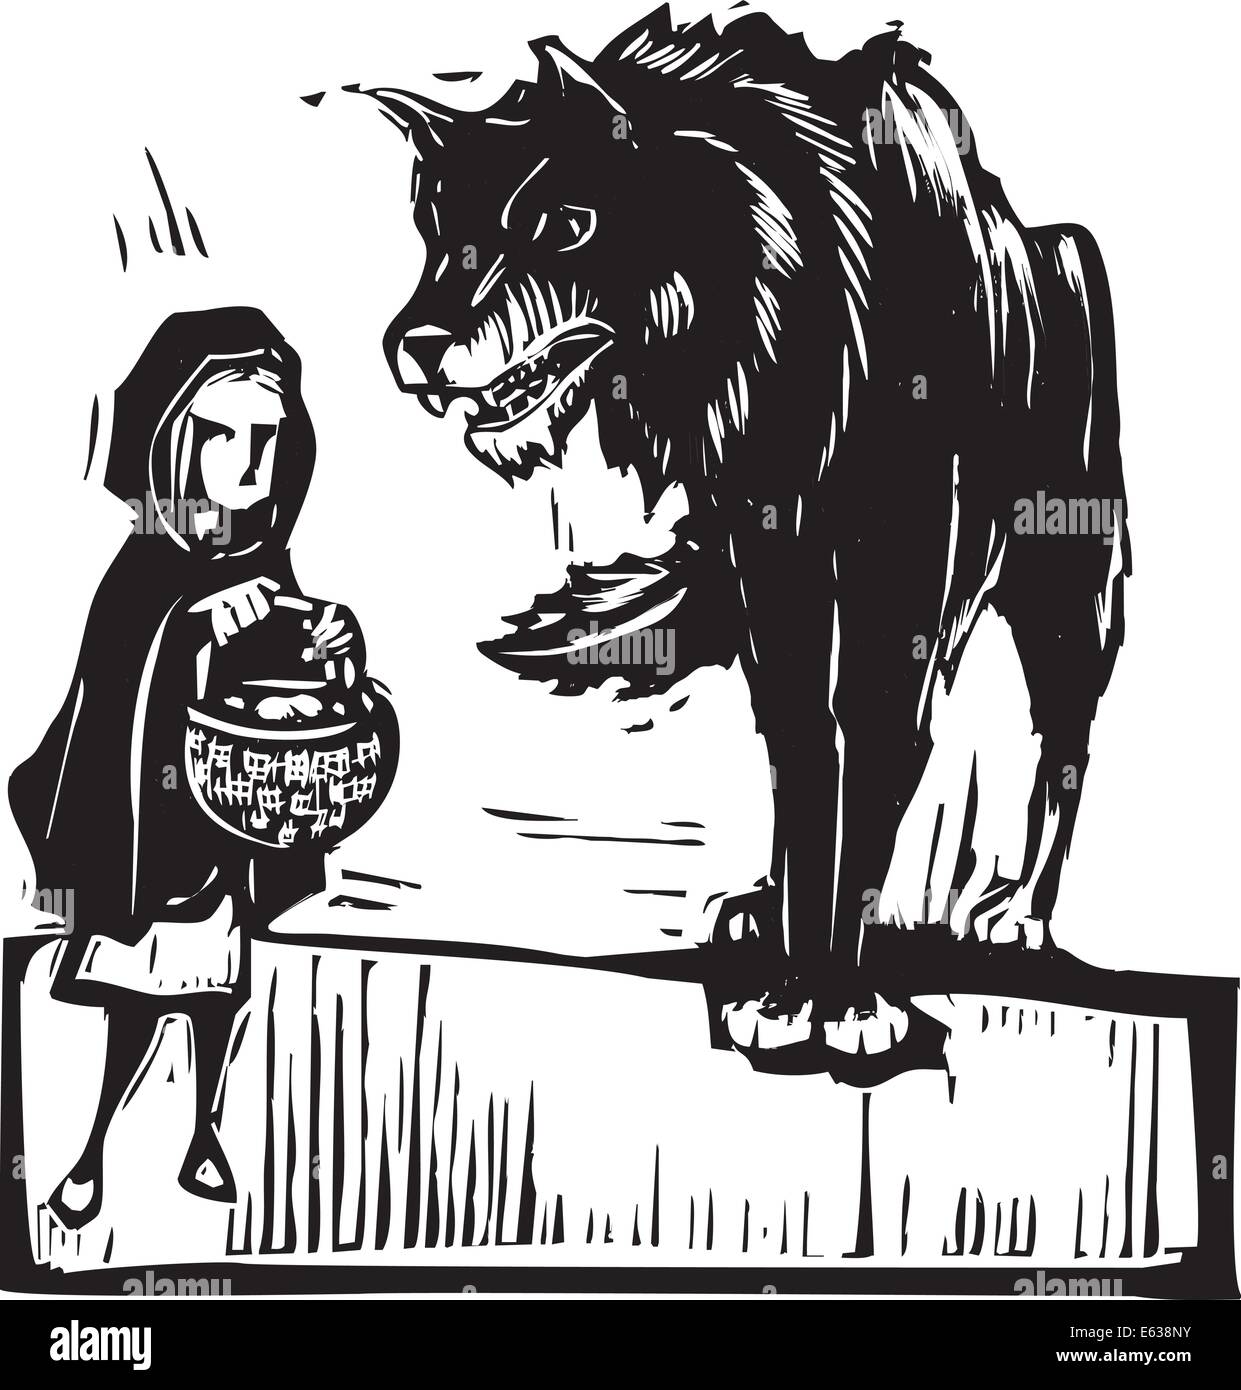 Holzschnitt Stil expressionistische Bild von little red Riding Hood Treffen der großen bösen Wolf. Stock Vektor